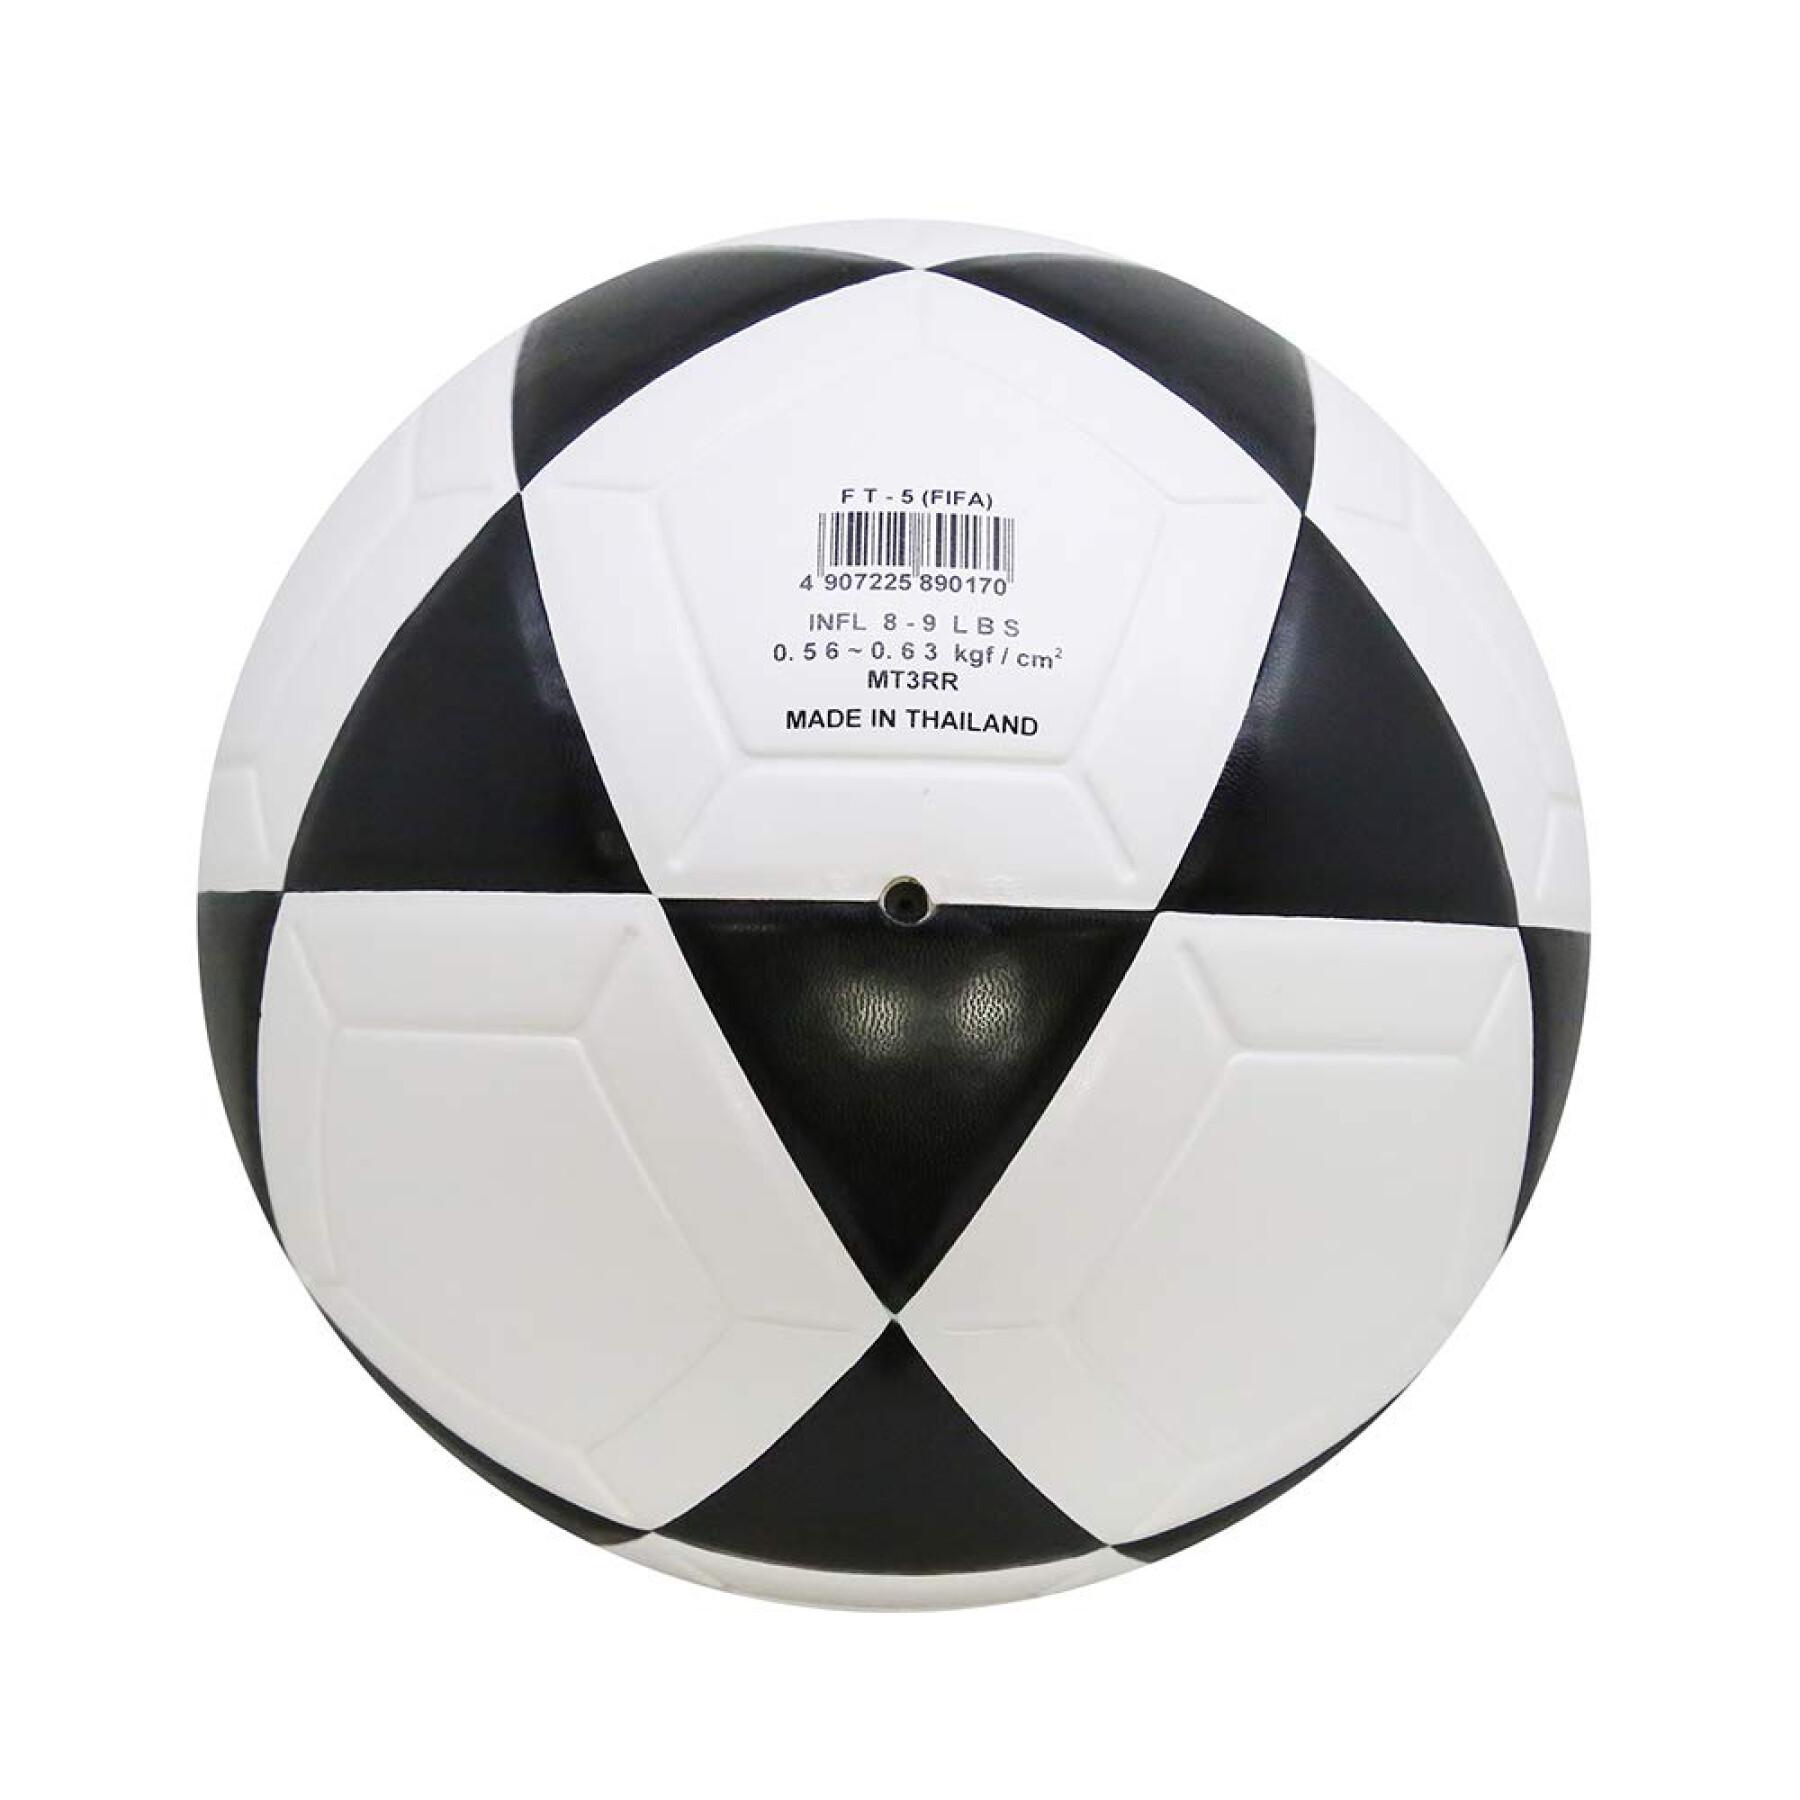 Balón de fútbol Mikasa FT-5